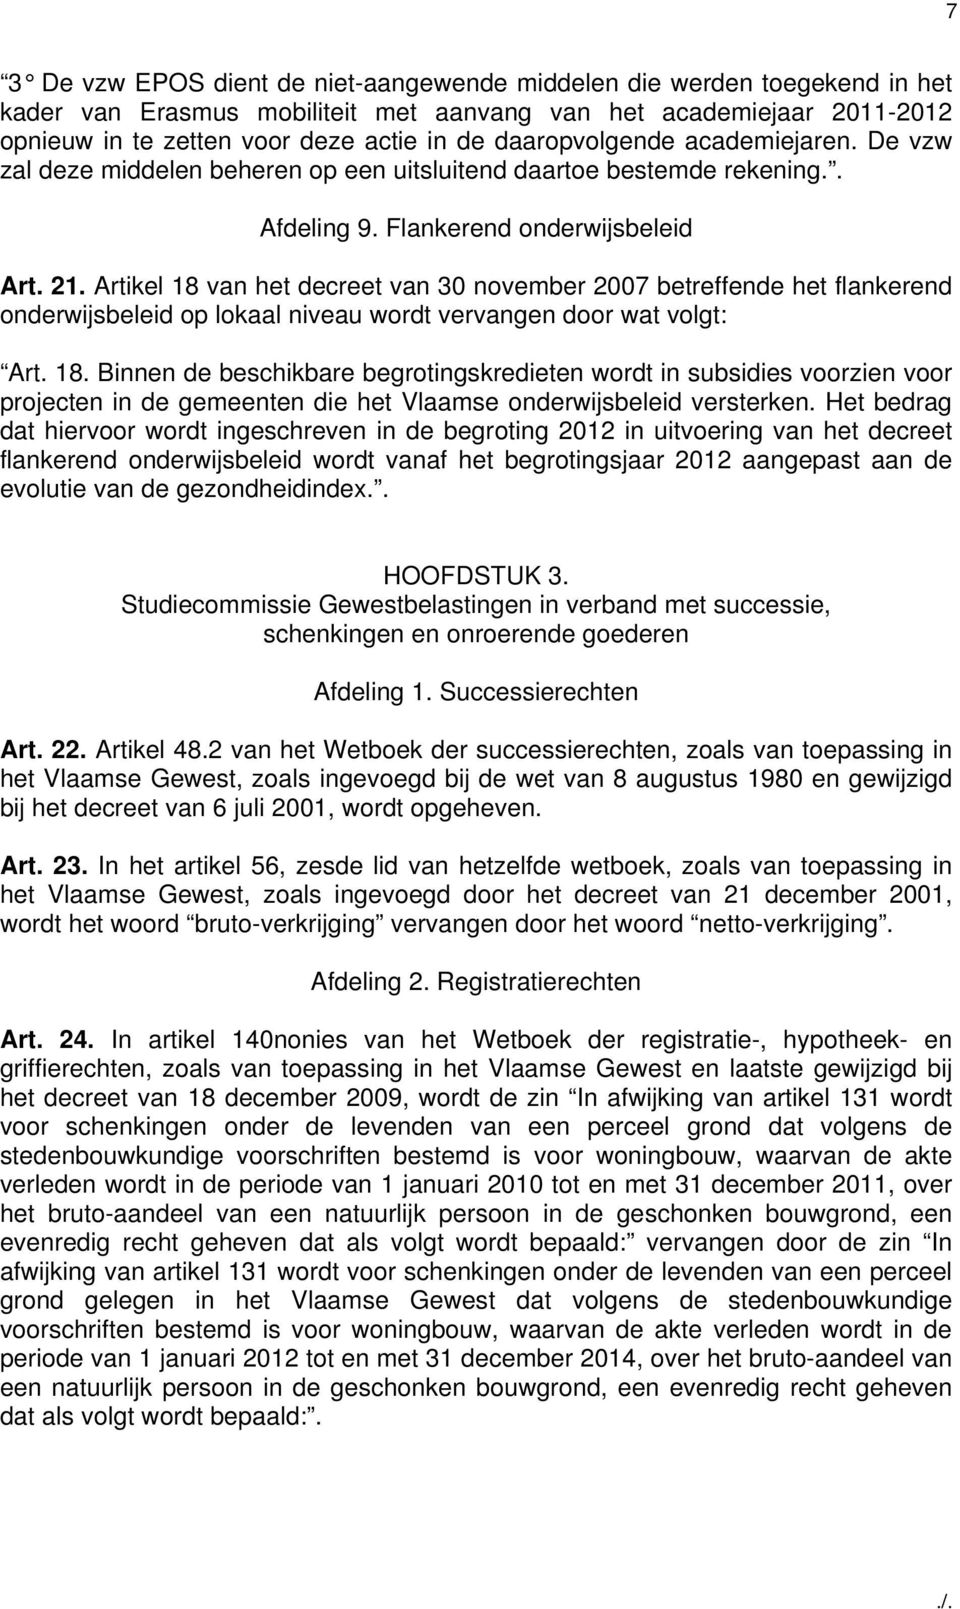 Artikel 18 van het decreet van 30 november 2007 betreffende het flankerend onderwijsbeleid op lokaal niveau wordt vervangen door wat volgt: Art. 18. Binnen de beschikbare begrotingskredieten wordt in subsidies voorzien voor projecten in de gemeenten die het Vlaamse onderwijsbeleid versterken.